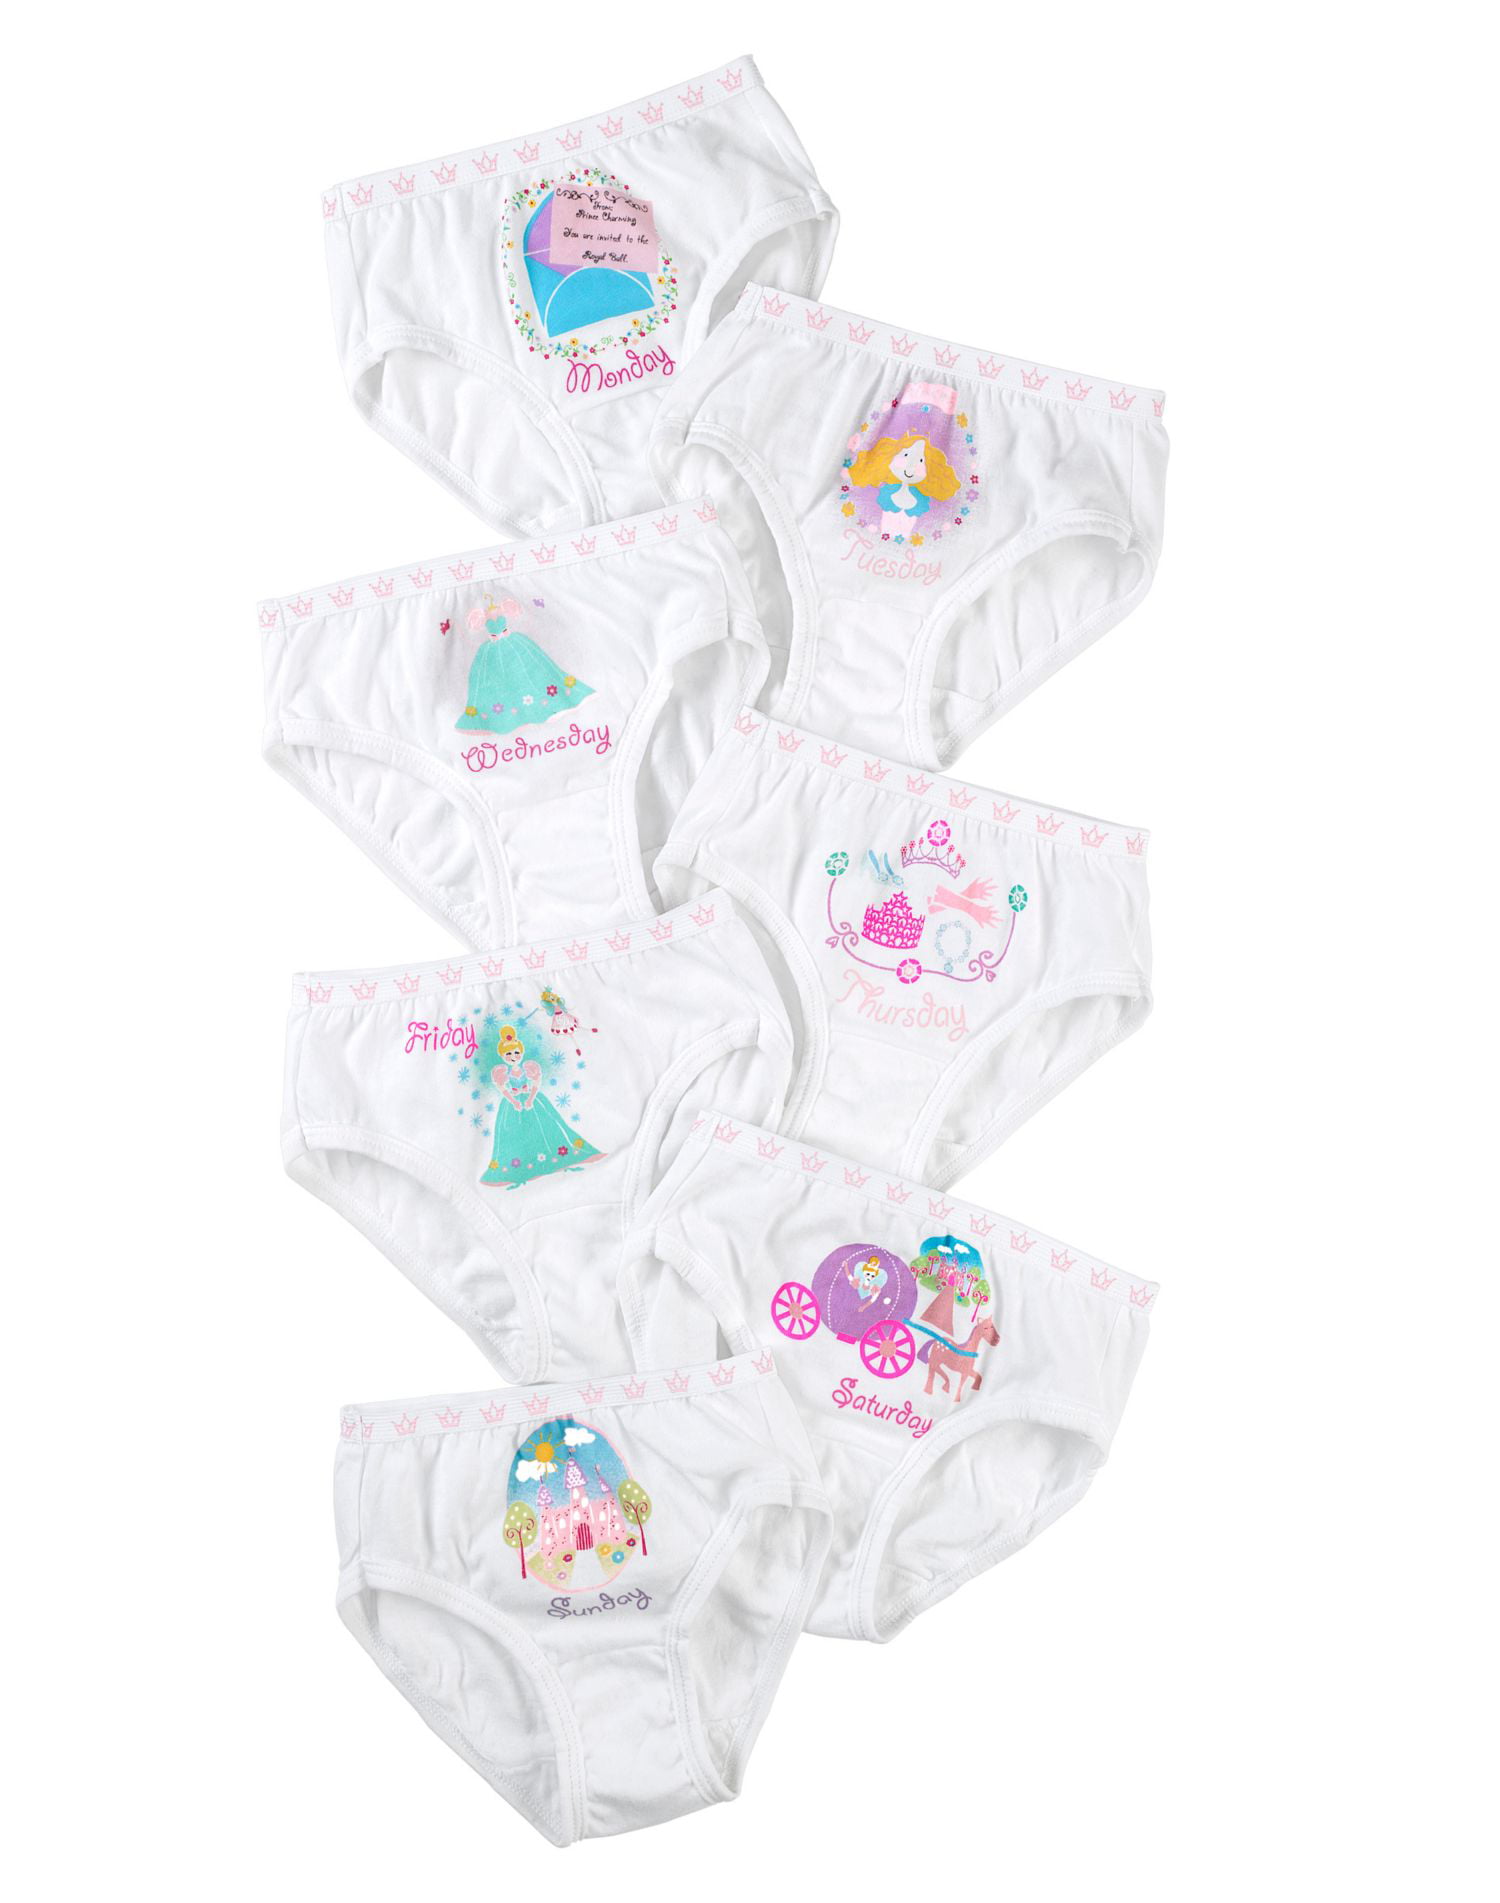 Hanes Days of Week Underwear, 7-Pack (Toddler Girls)